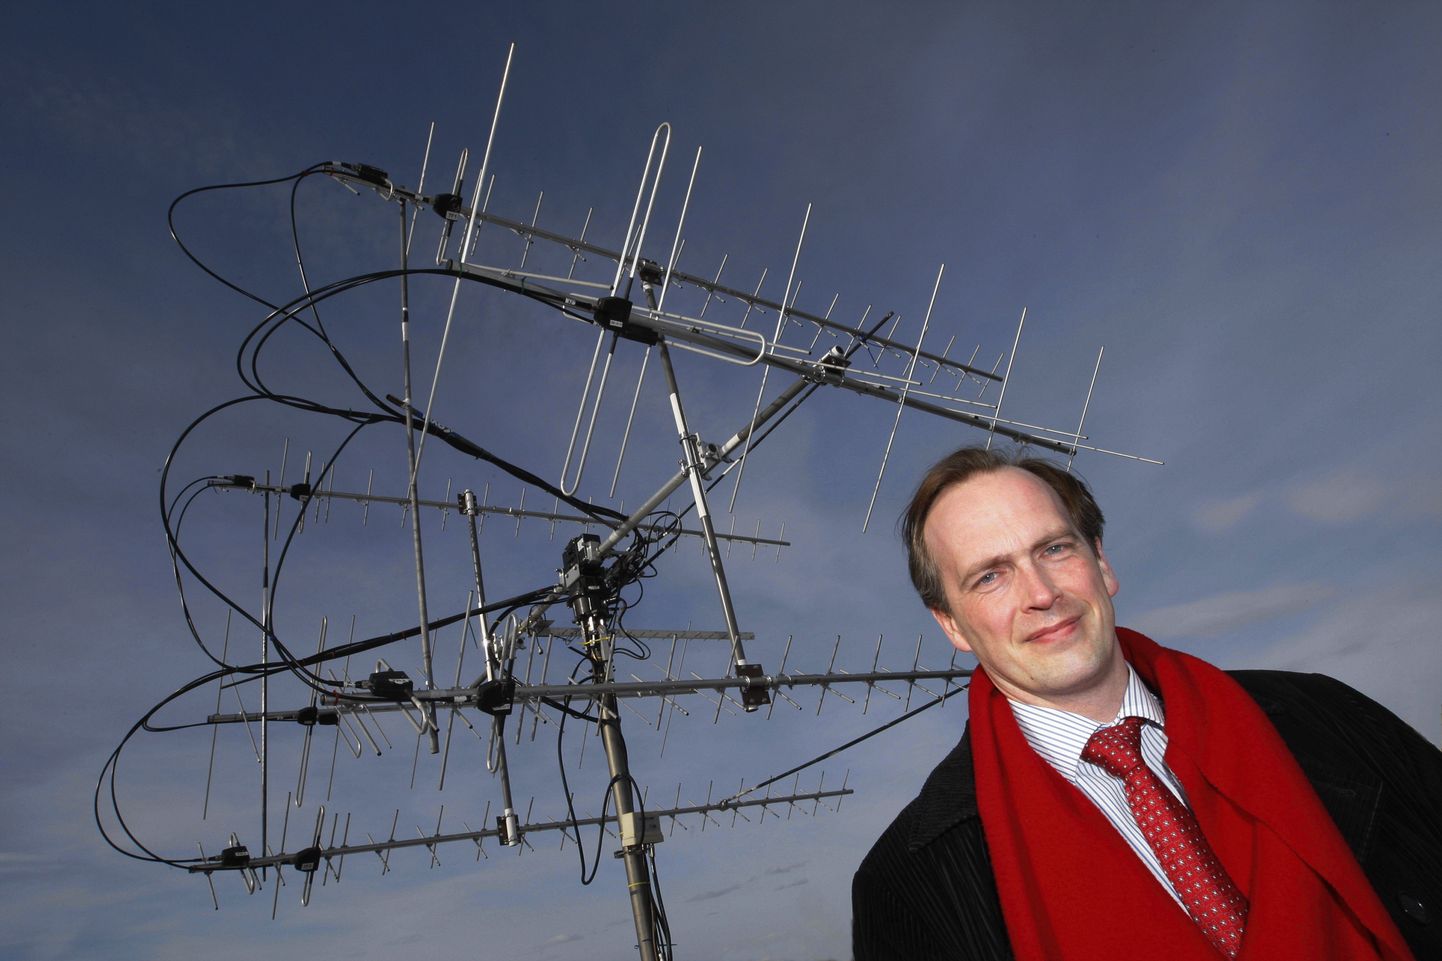 Руководитель проекта эстонского спутника Март Ноорма доволен итогами первого года работы EstCube. За спиной у Ноорма антенна, посредством которой поддерживается связь со спутником.